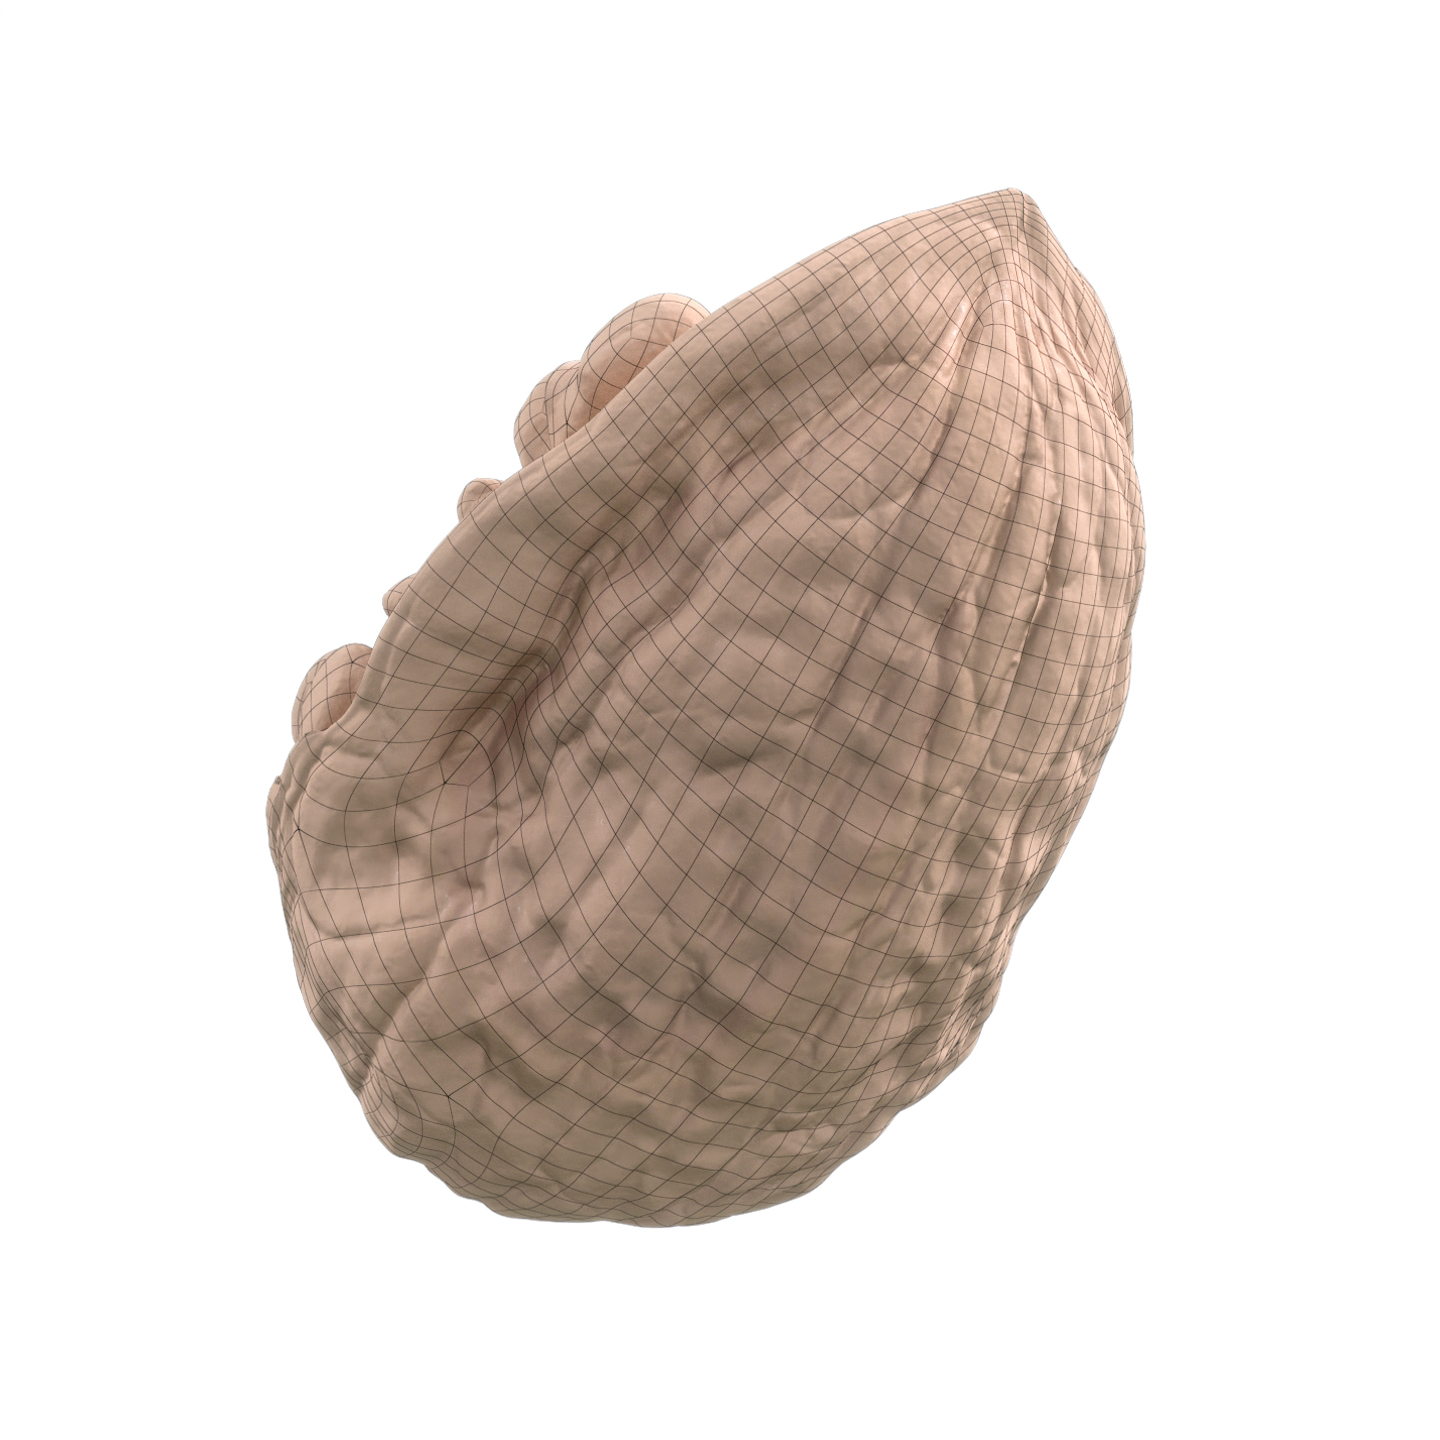 Veedpo Walnut 3D Scan 3D Model 3D Asset Zerolens Mustapha Redouane Djabri 3D Model 